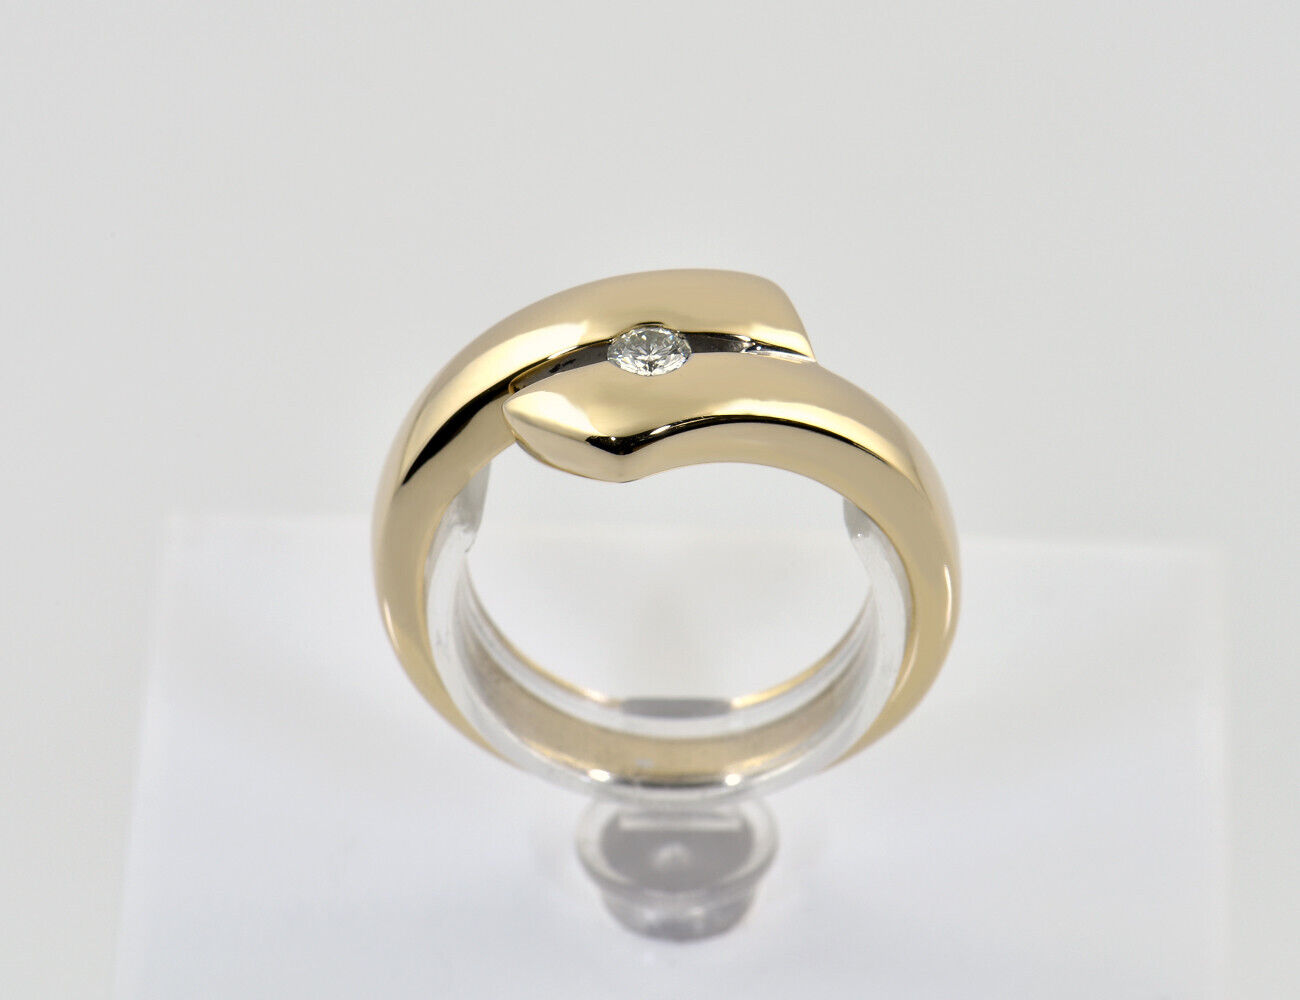 Diamant Ring 585/000 14 K Gelbgold Brillant 0,14 ct